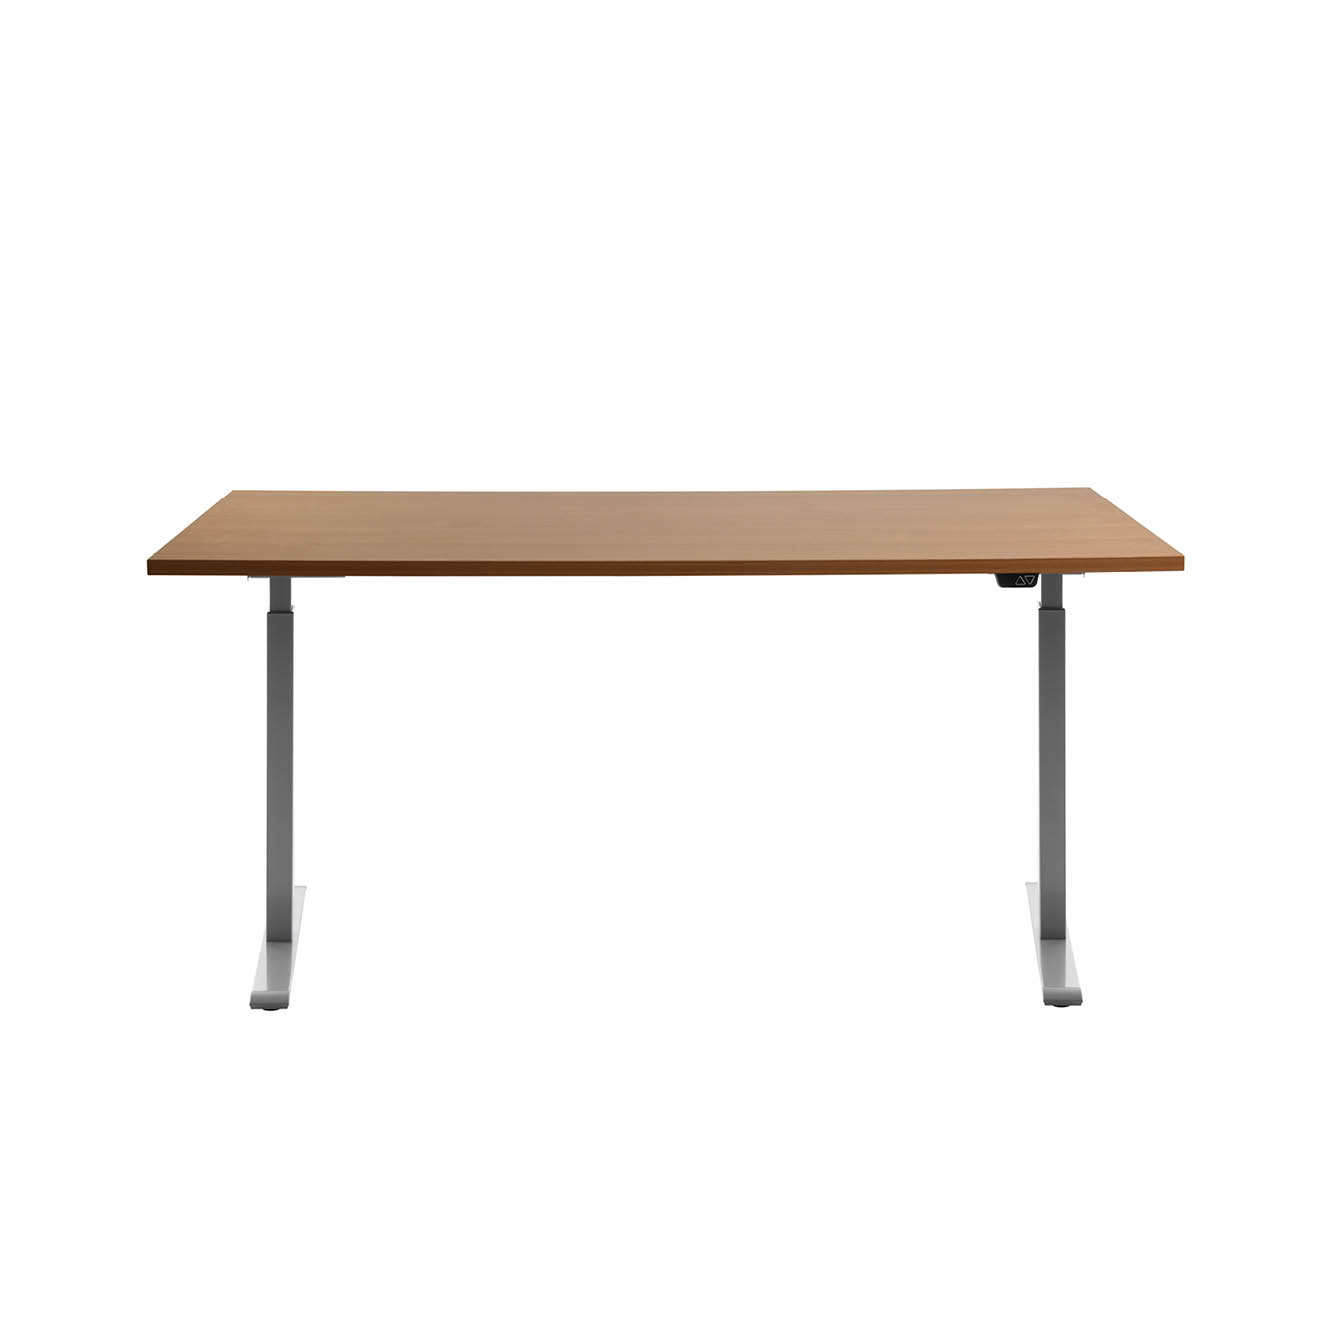 160 x 80 cm Schreibtisch Topstar Ergo E-Table höhenverstellbar - grau, Buche